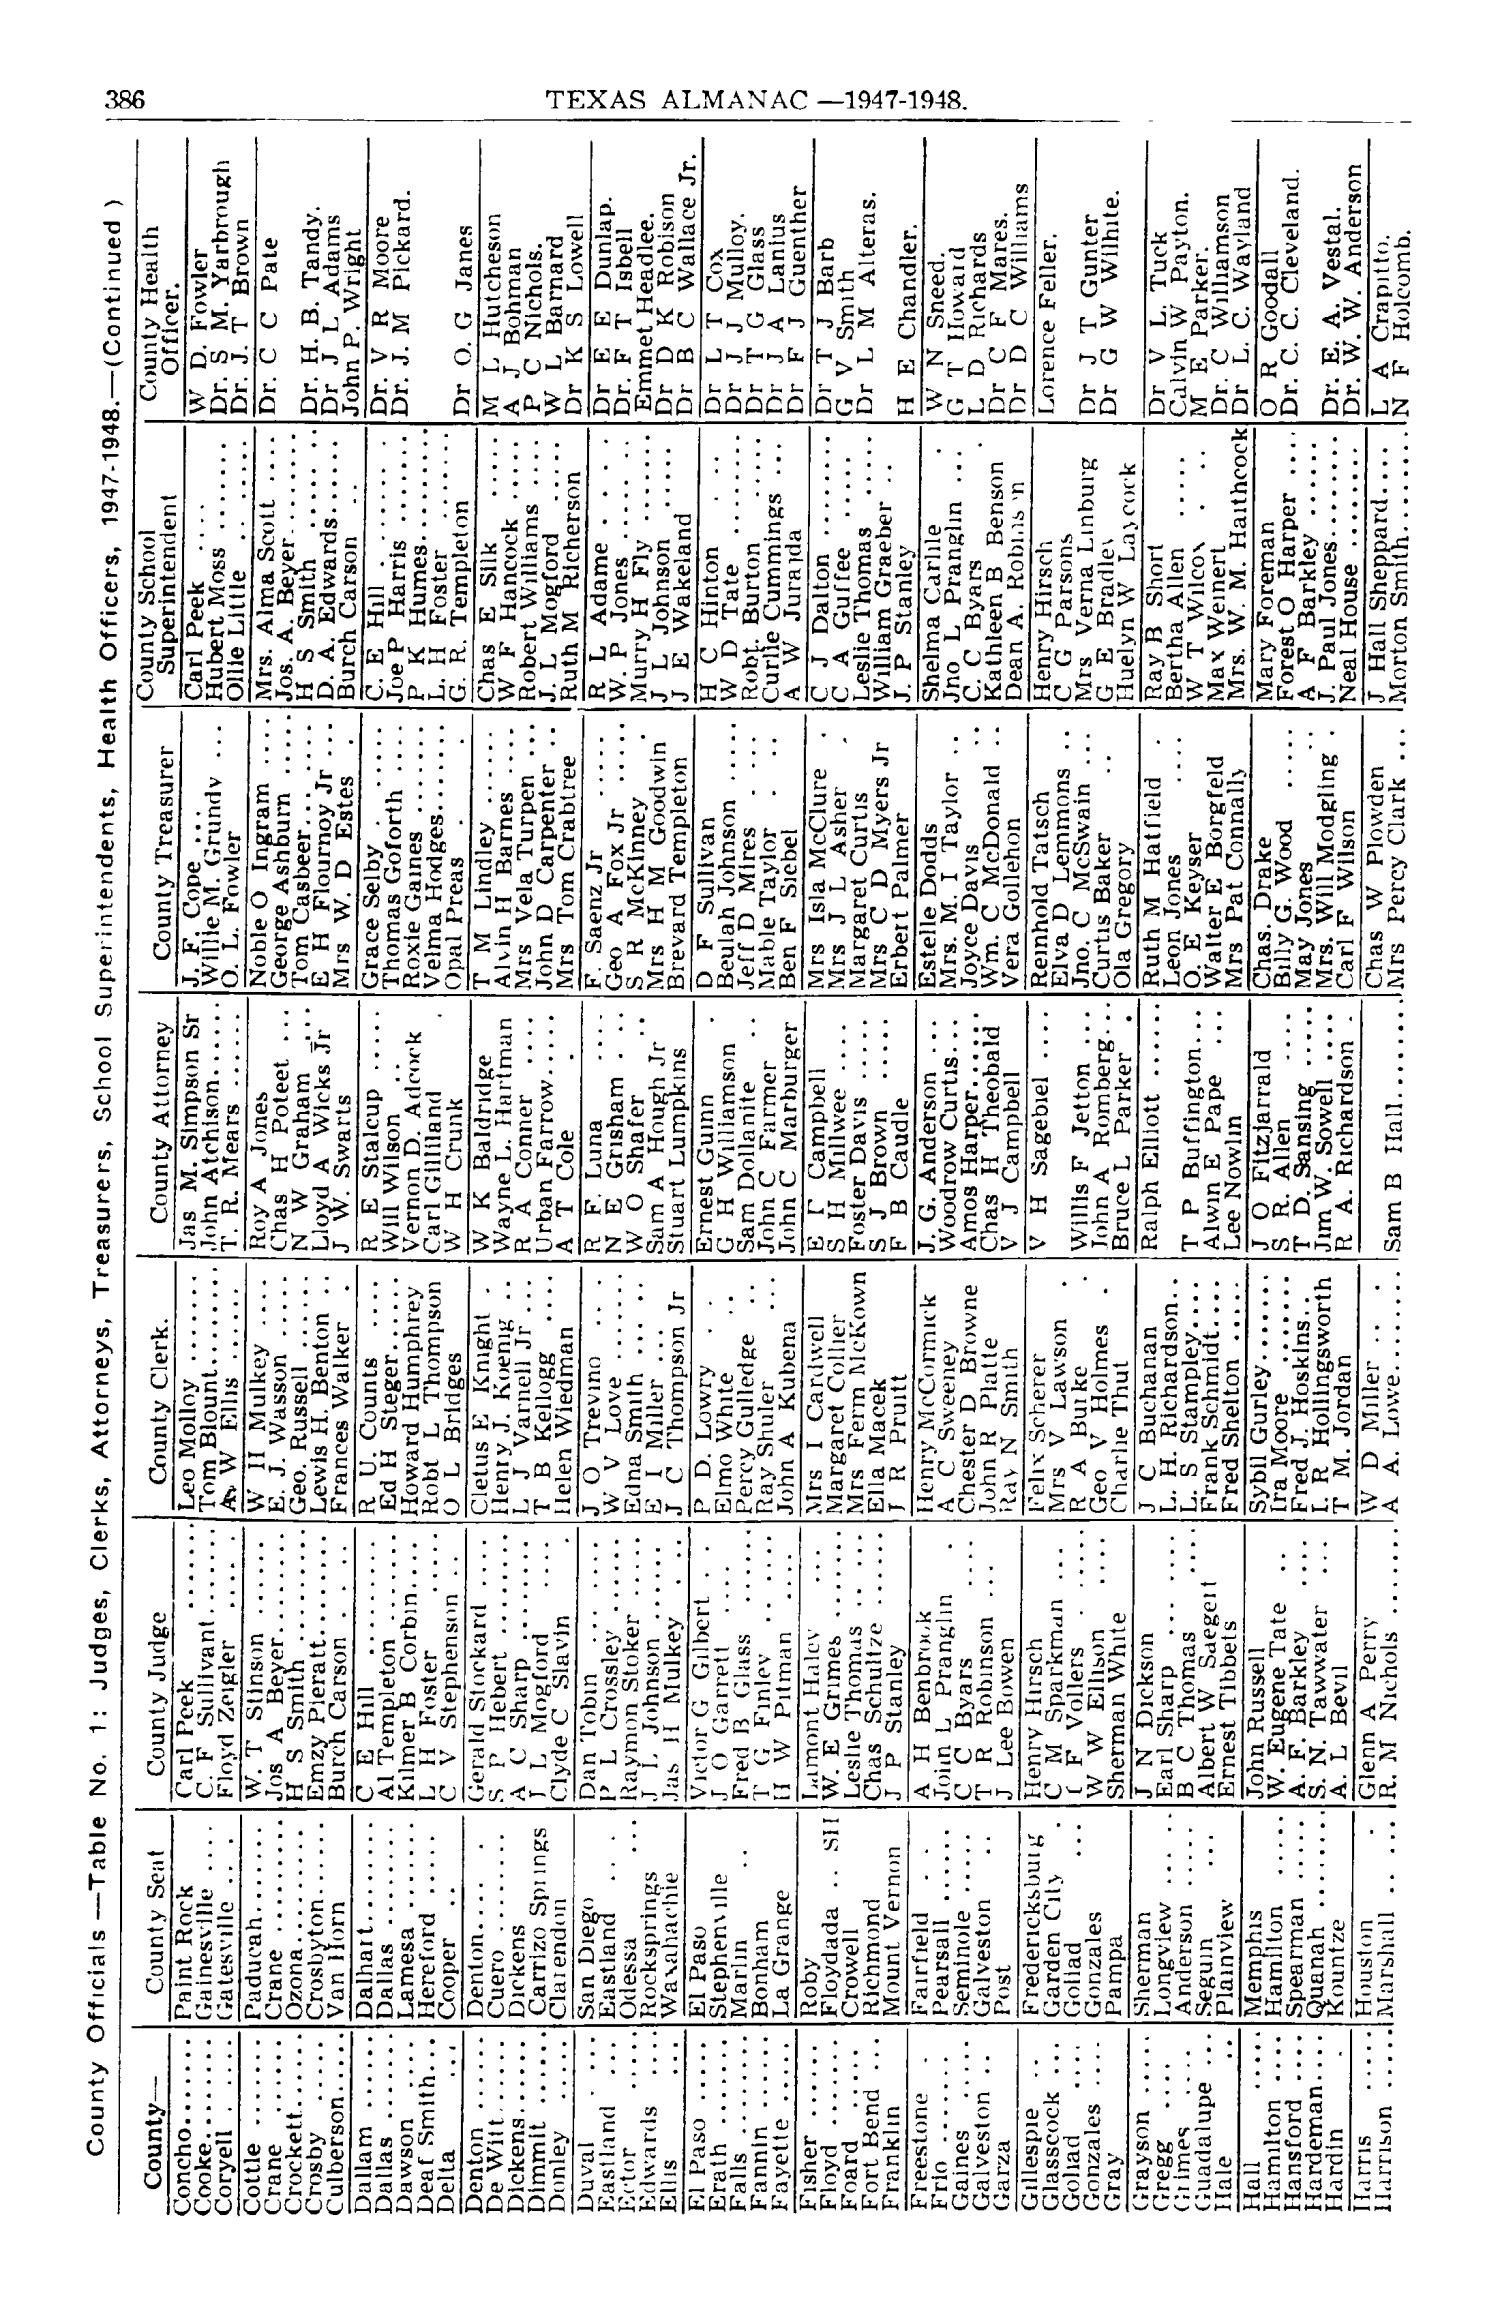 Texas Almanac, 1947-1948
                                                
                                                    386
                                                